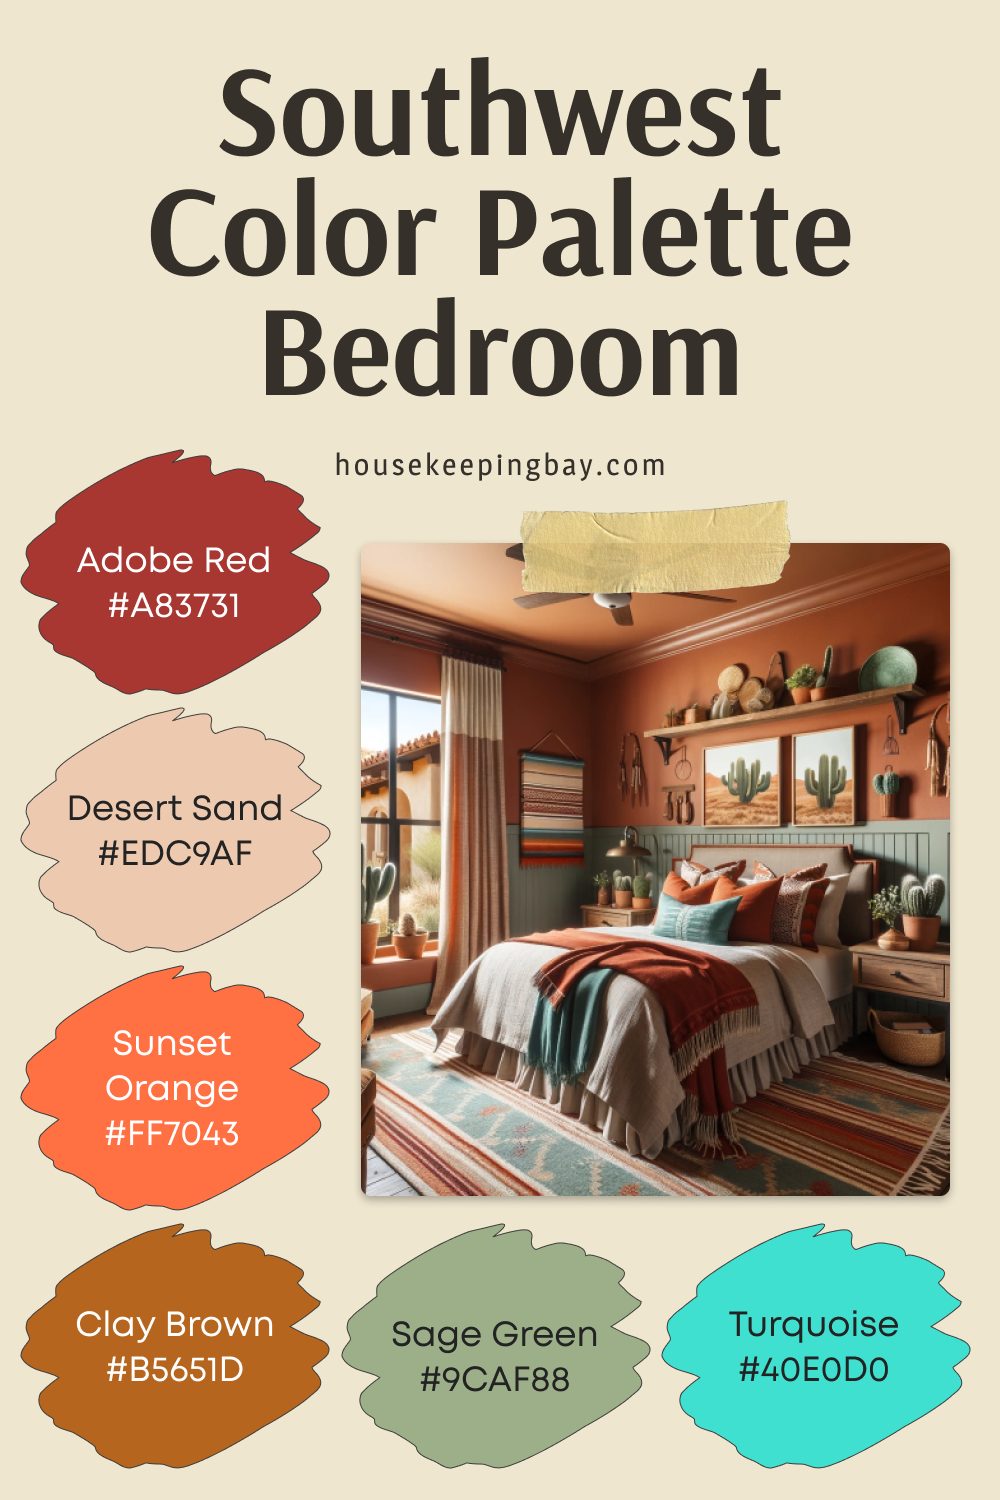 Southwest Color Palette Bedroom